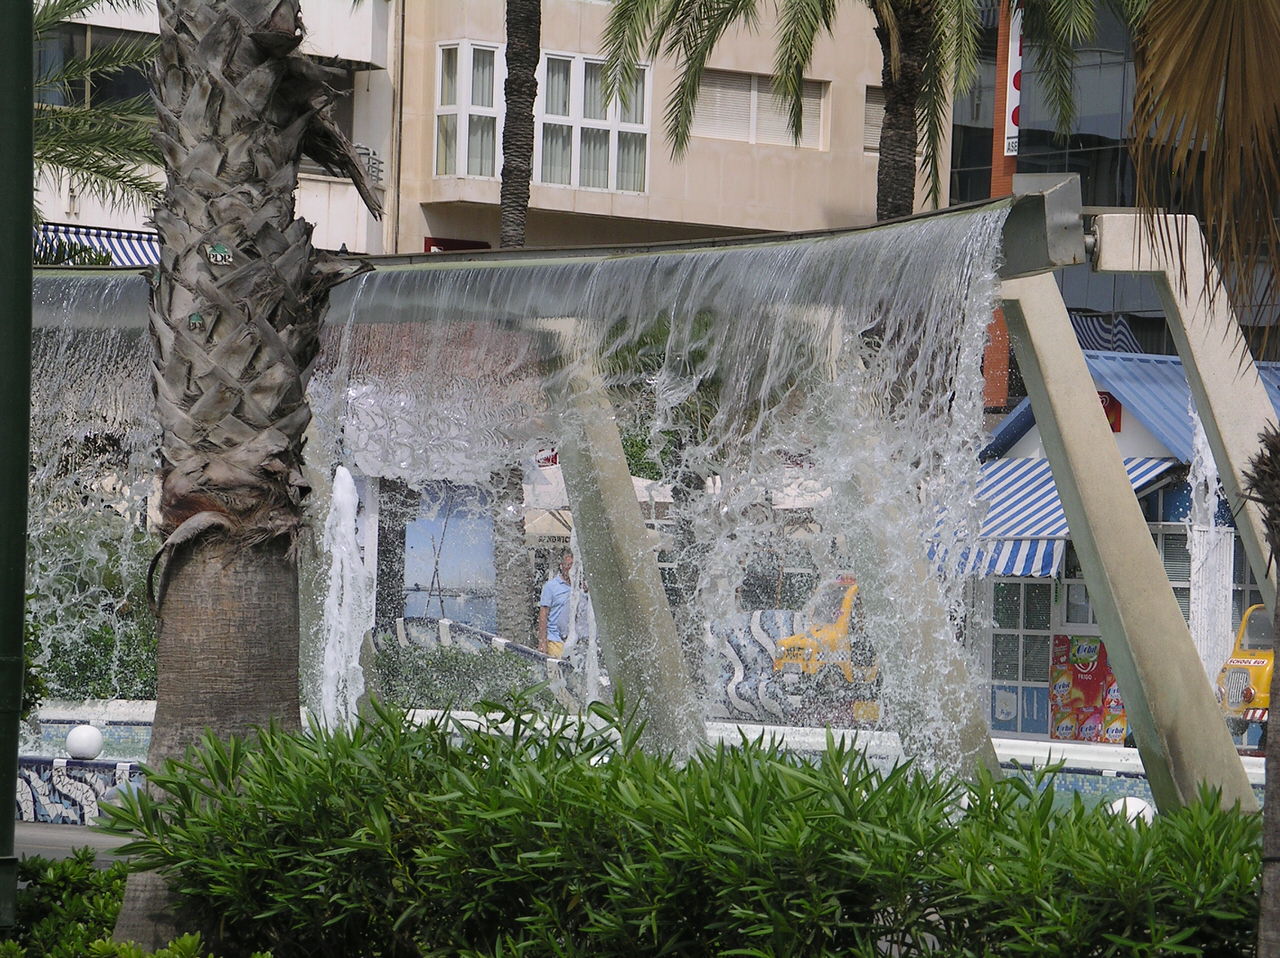 www.costaalquiler.com - fuente de agua en el centro, plaza Waldo Calero, apartamento de Torrevieja en alquiler